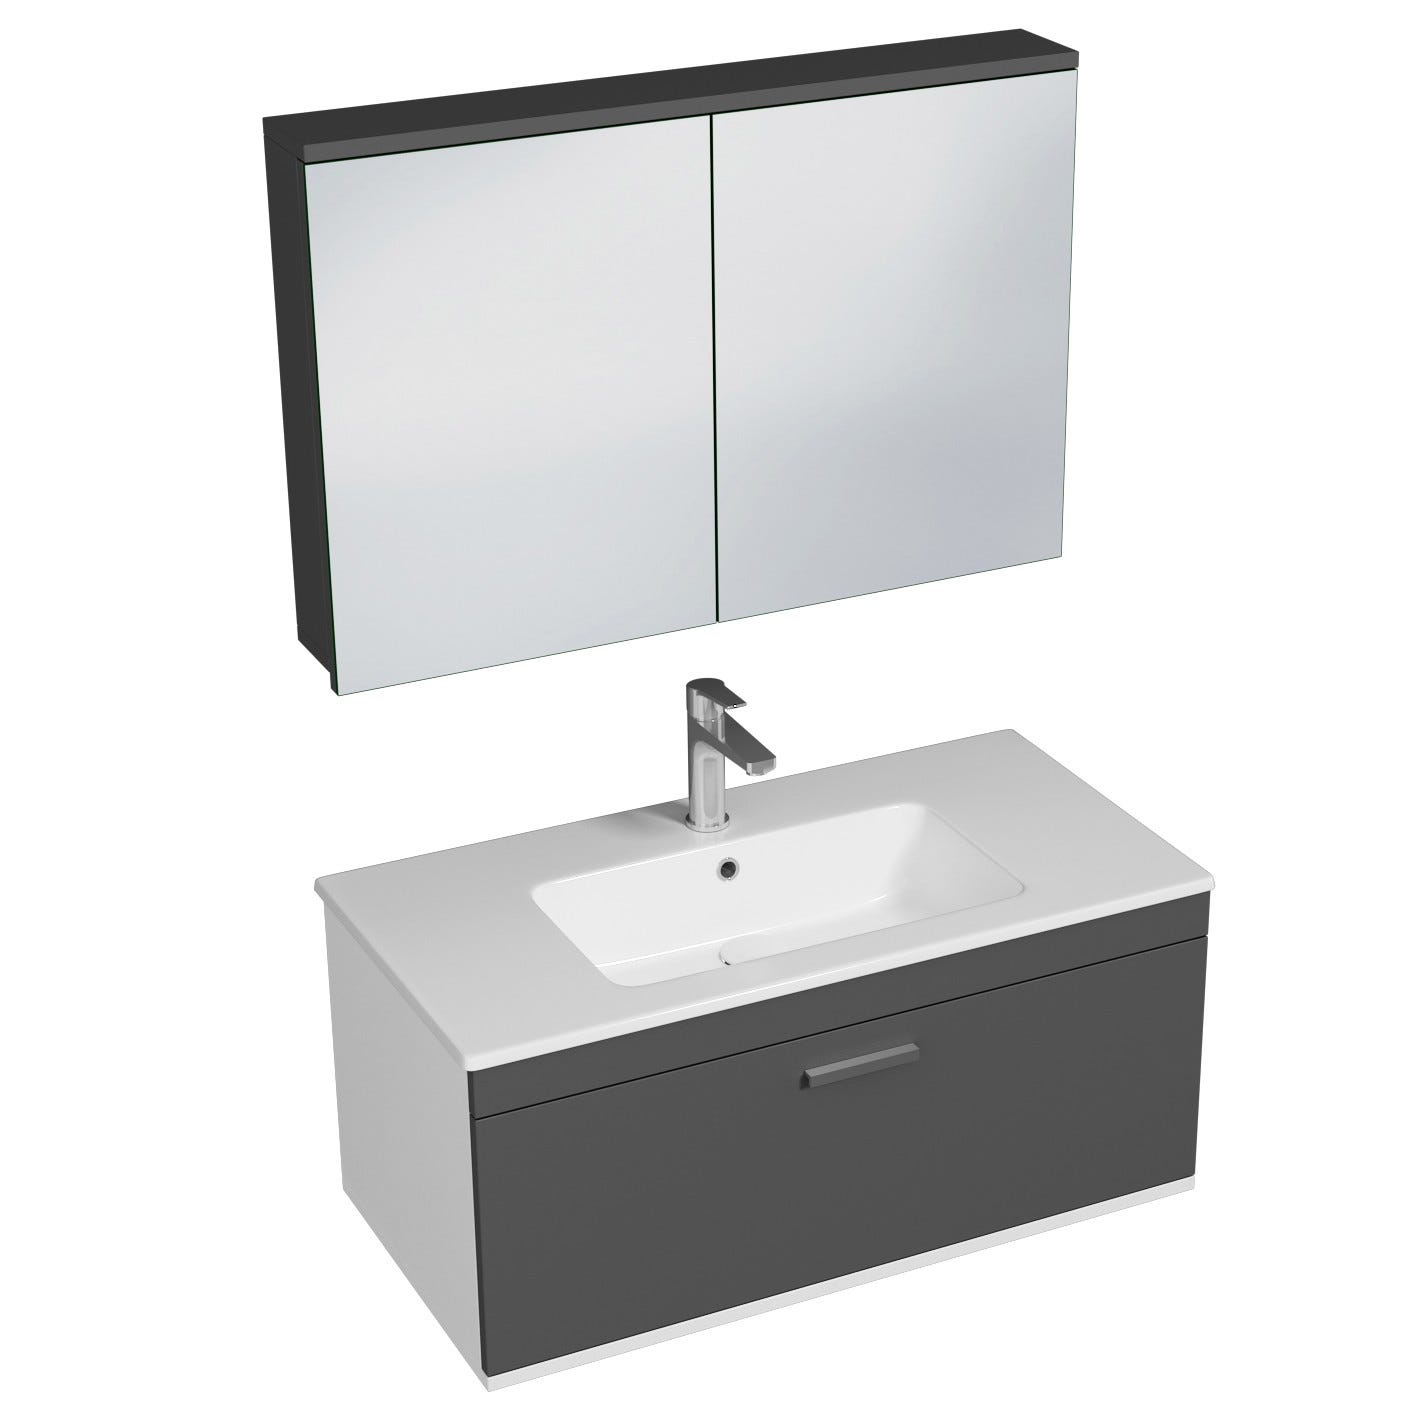 RUBITE Meuble salle de bain simple vasque 1 tiroir gris anthracite largeur 90 cm + miroir armoire 0